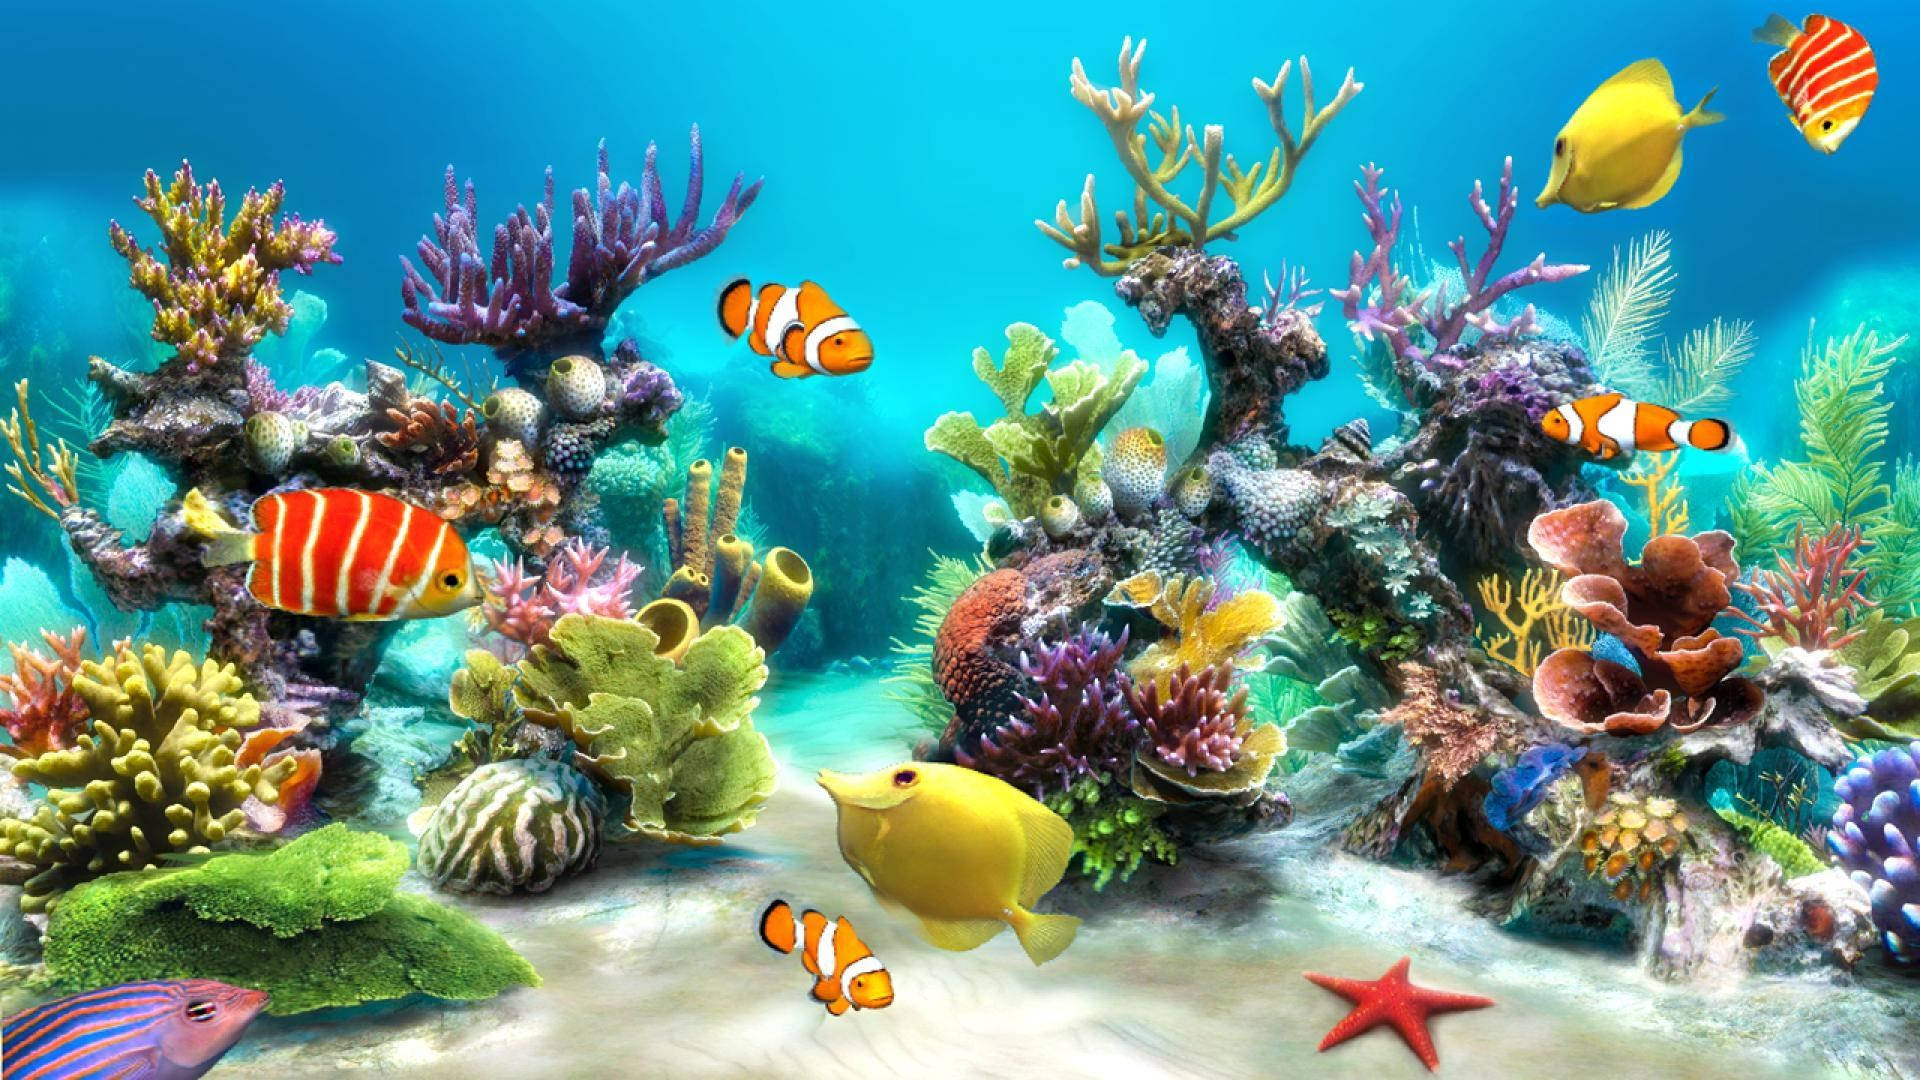 Hdfische In Bunten Korallen Wallpaper